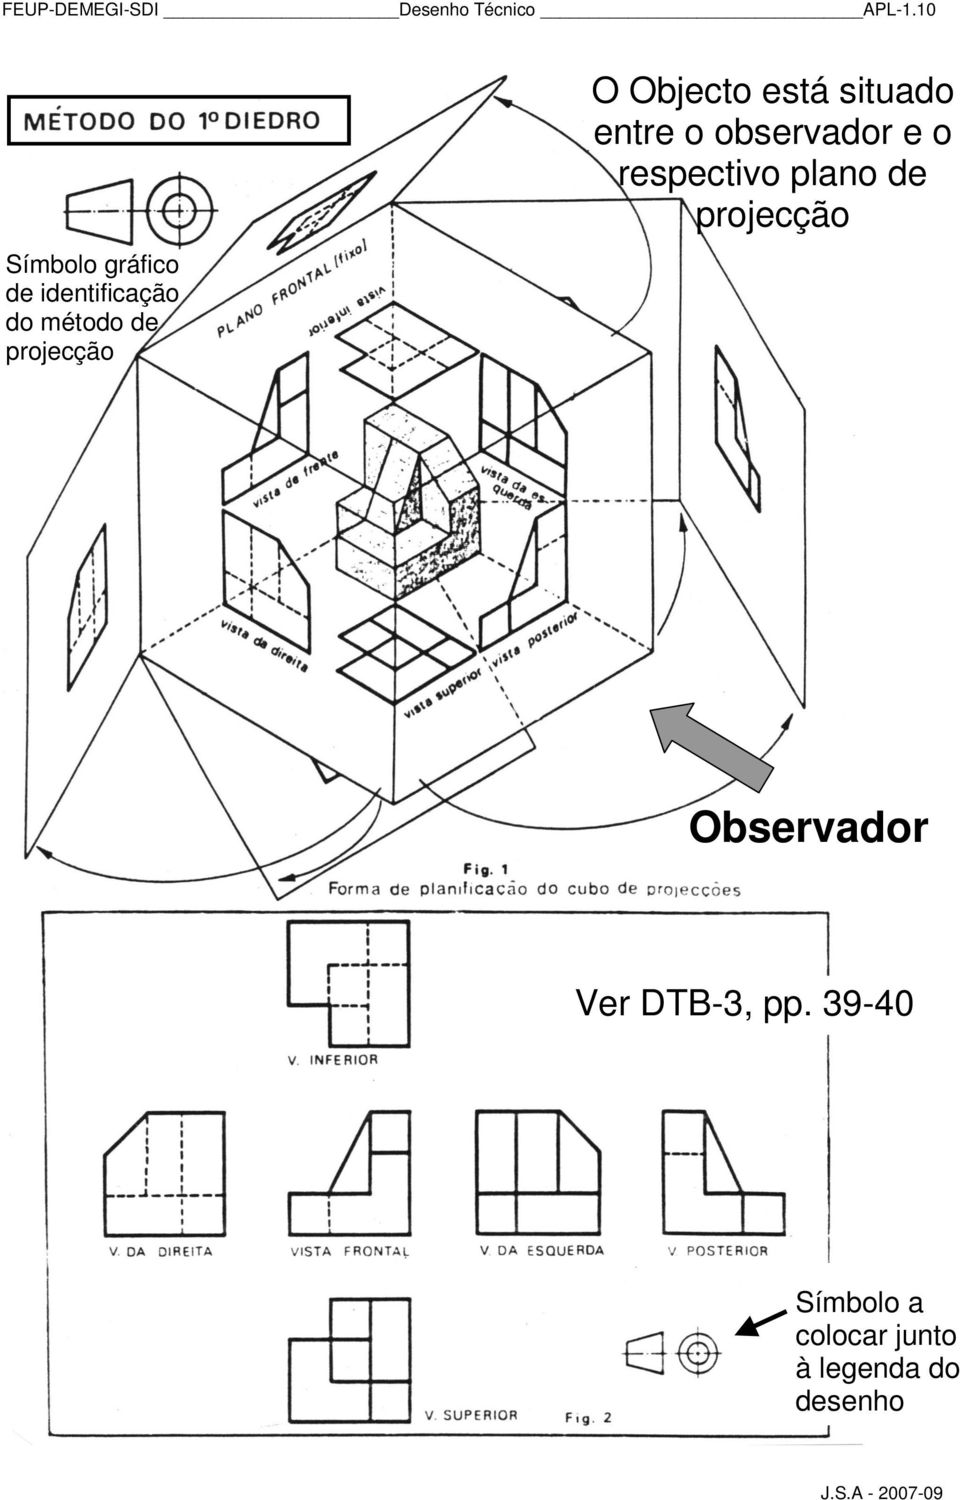 Objecto está situado entre o observador e o respectivo plano